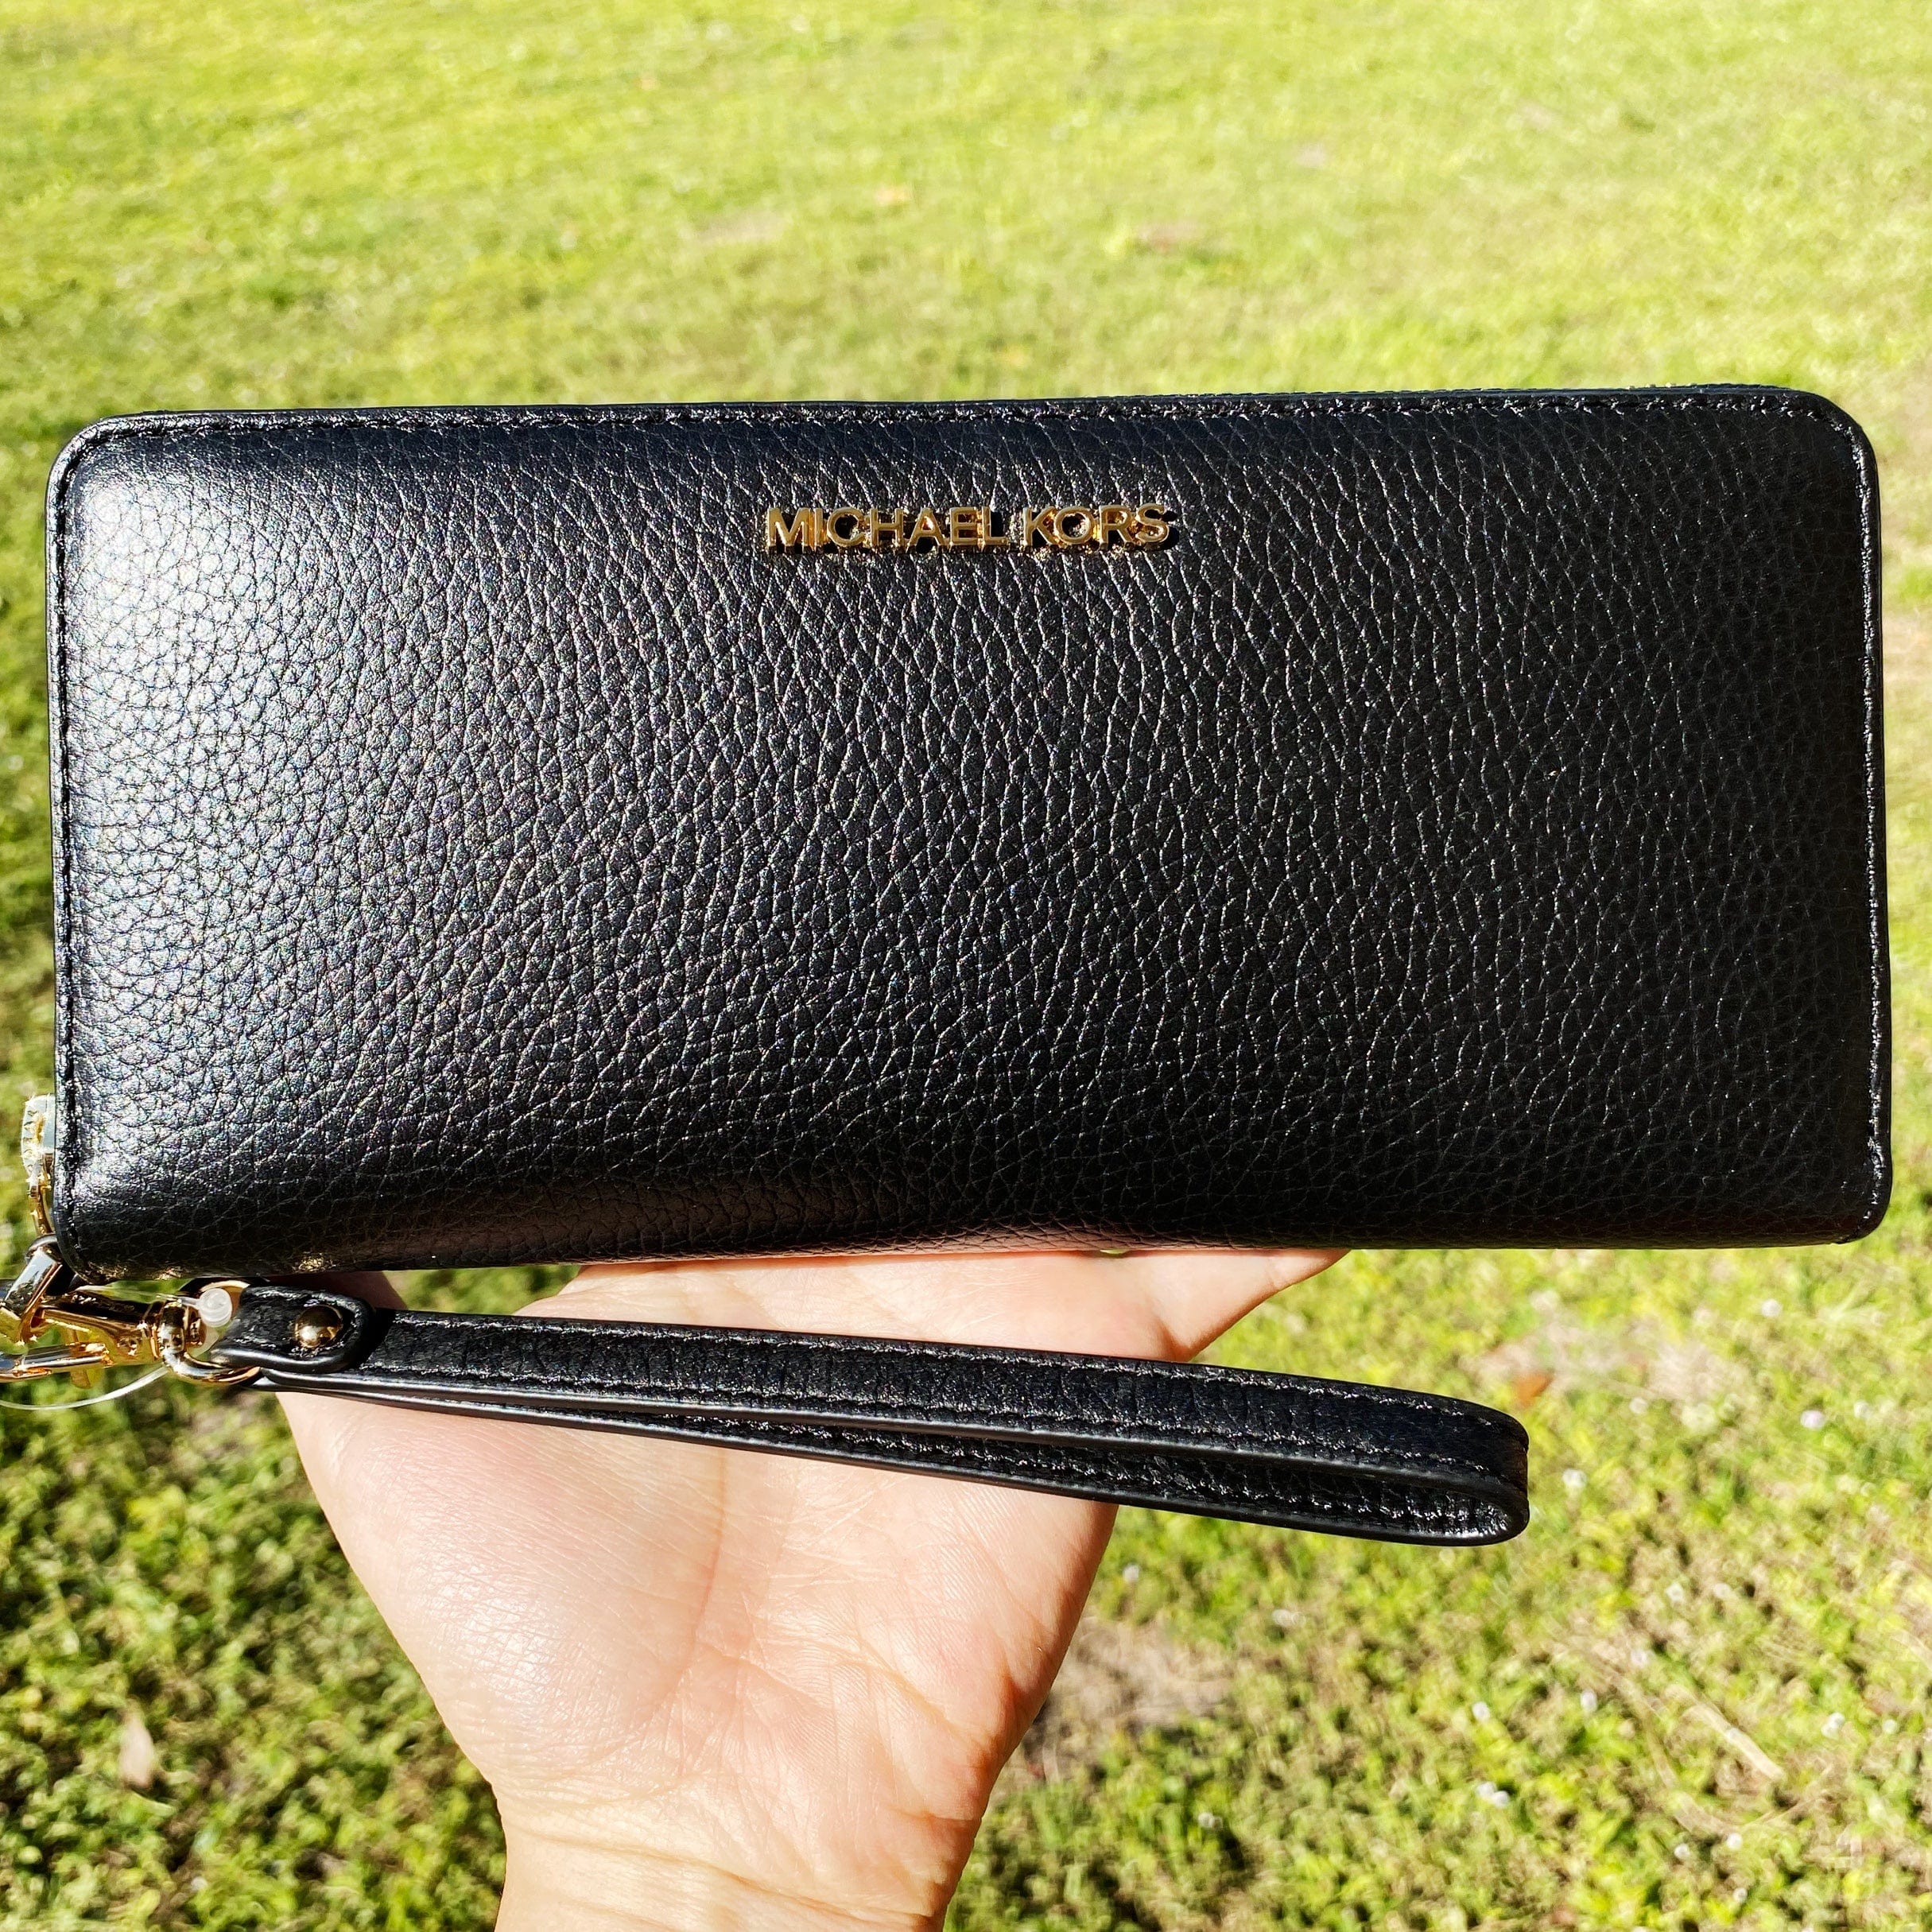 Michael Kors Jet Set Phone Wristlet Wallet Large Black in Leather